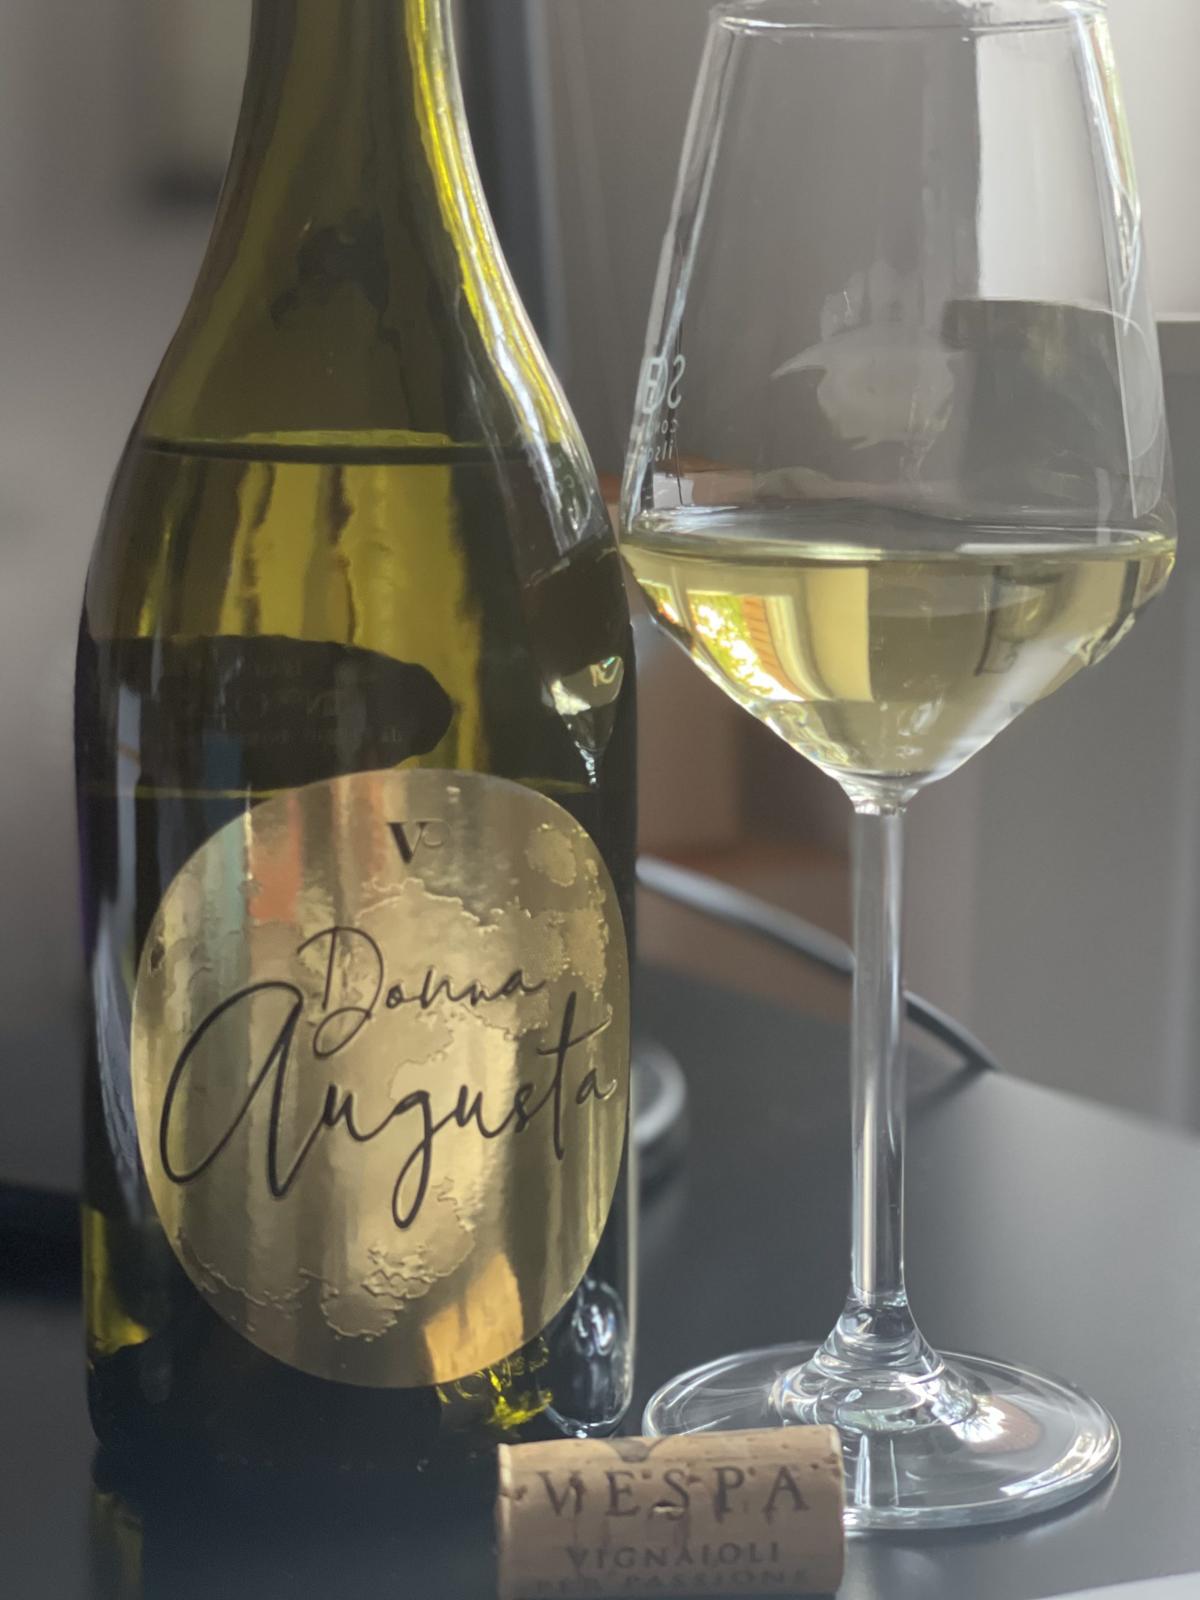 Donna Augusta tra i 10 migliori vini dell’anno